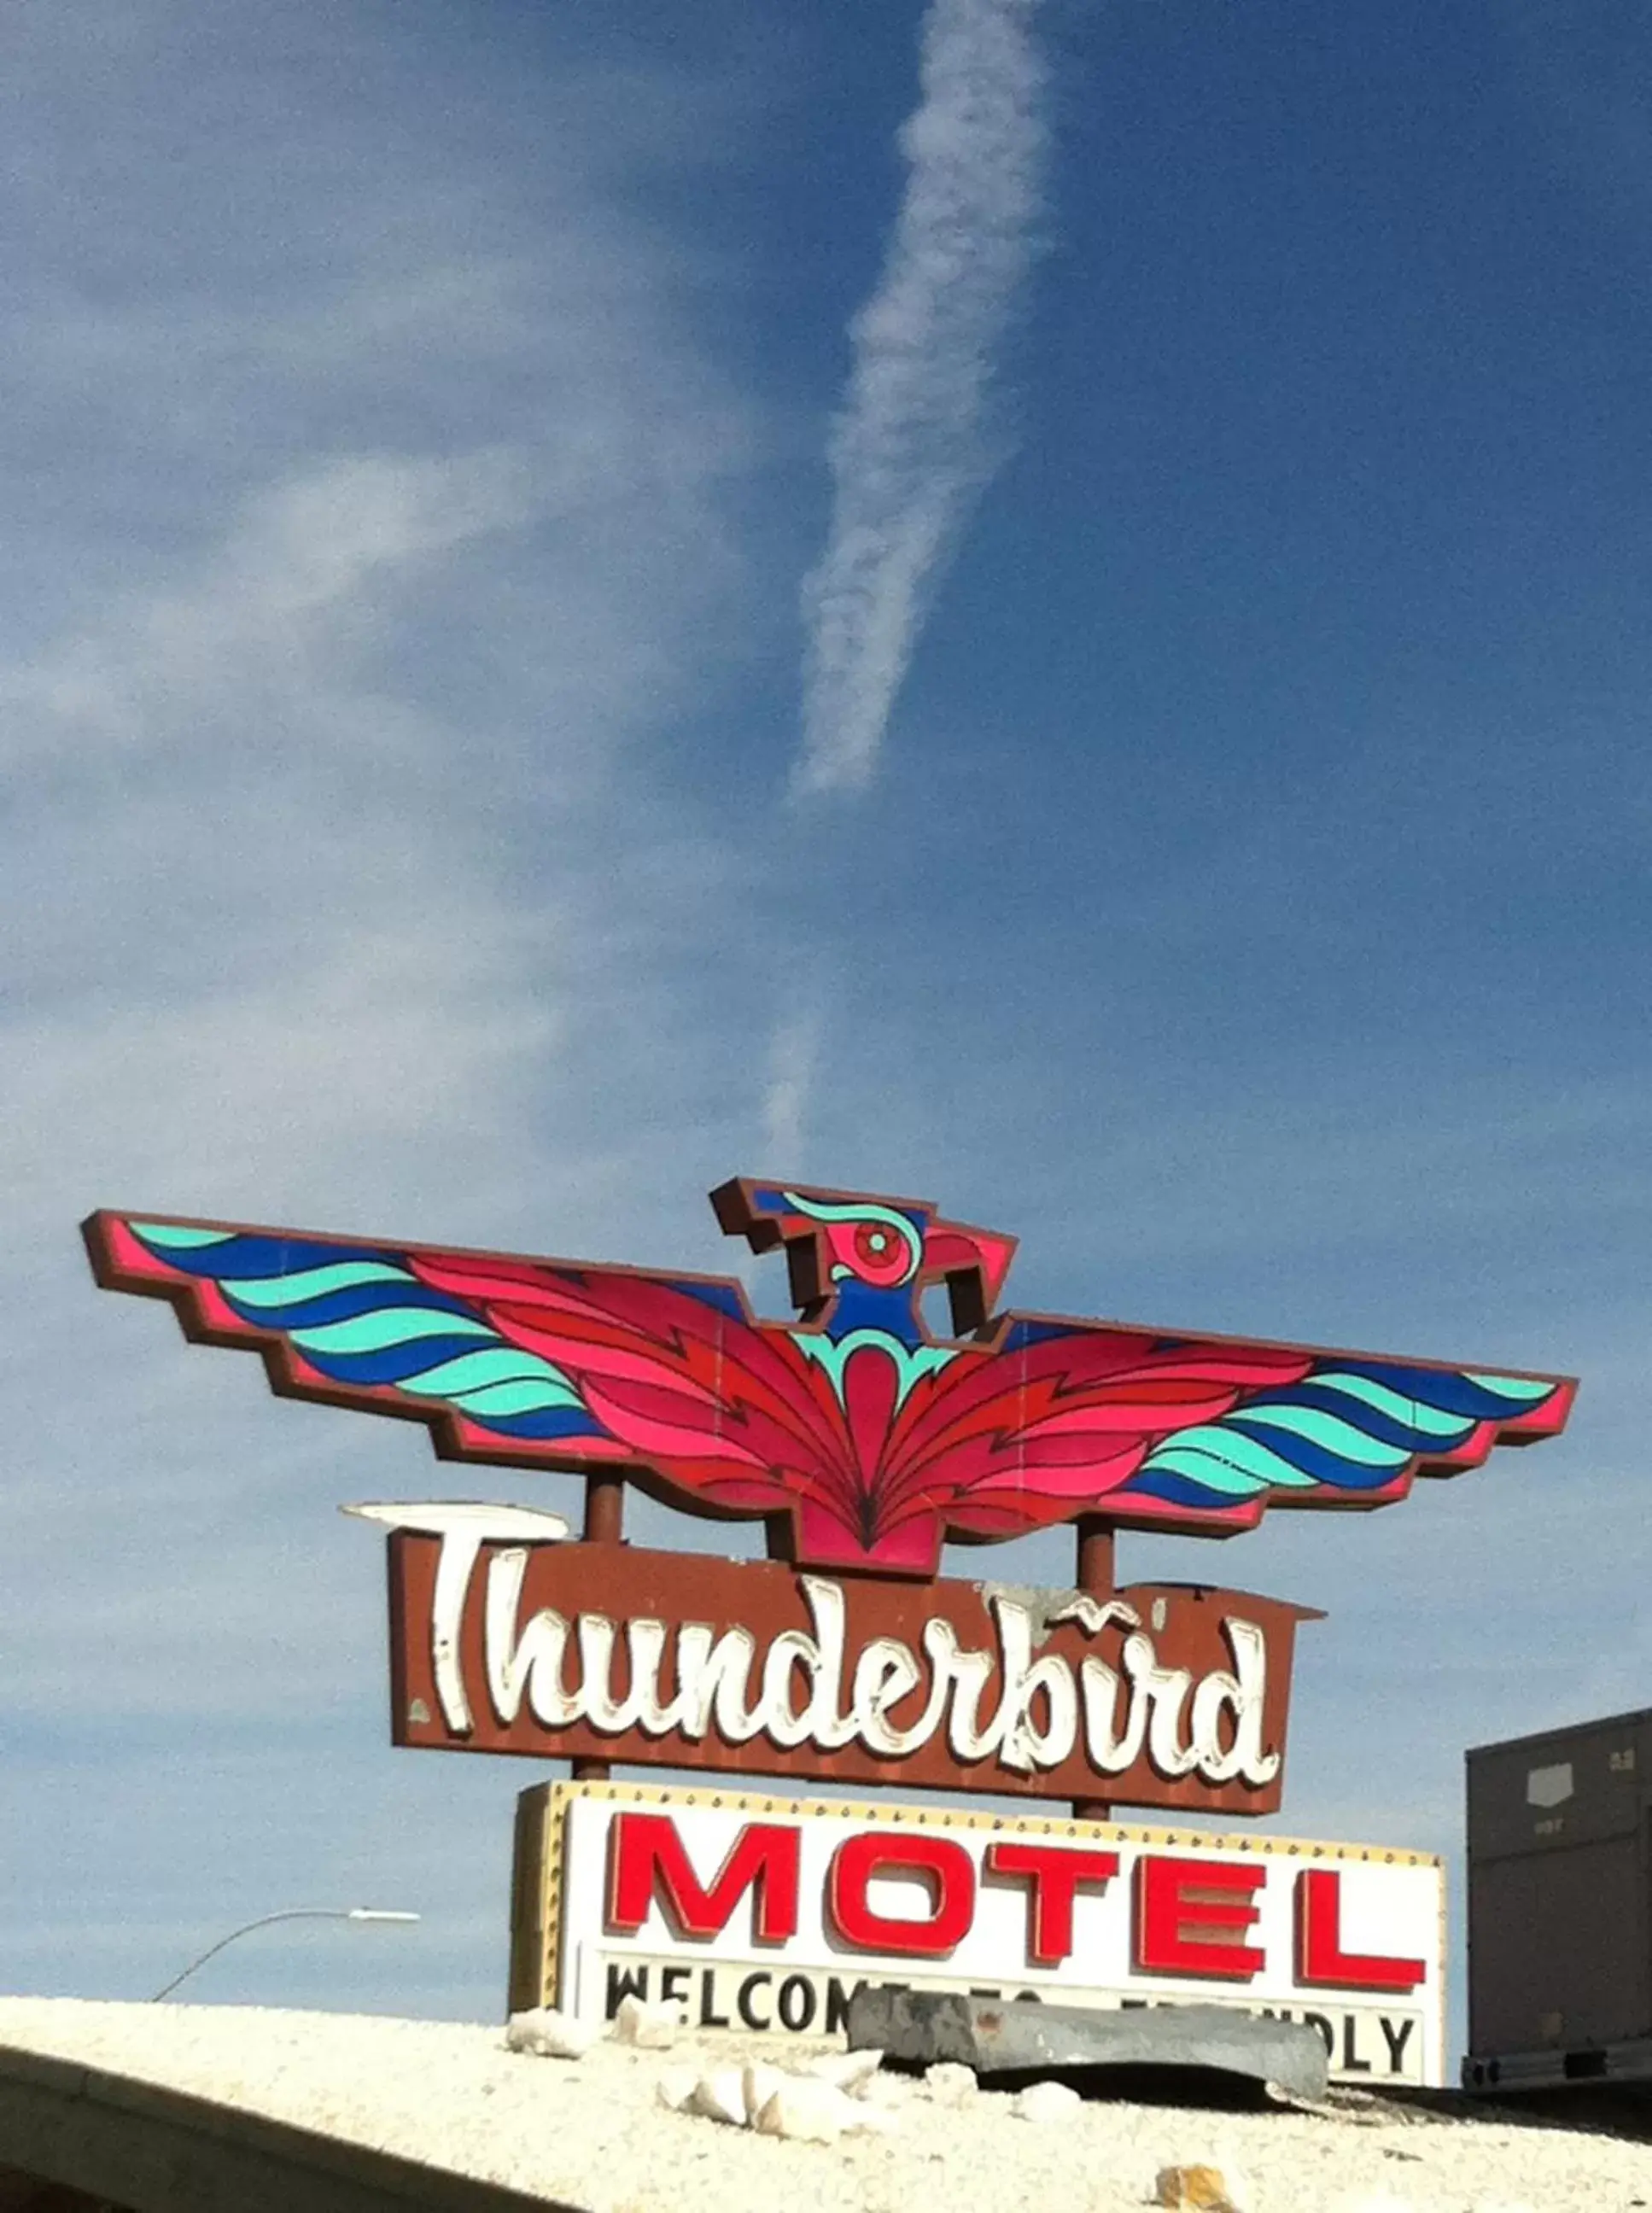 Facade/entrance in Thunderbird Motel